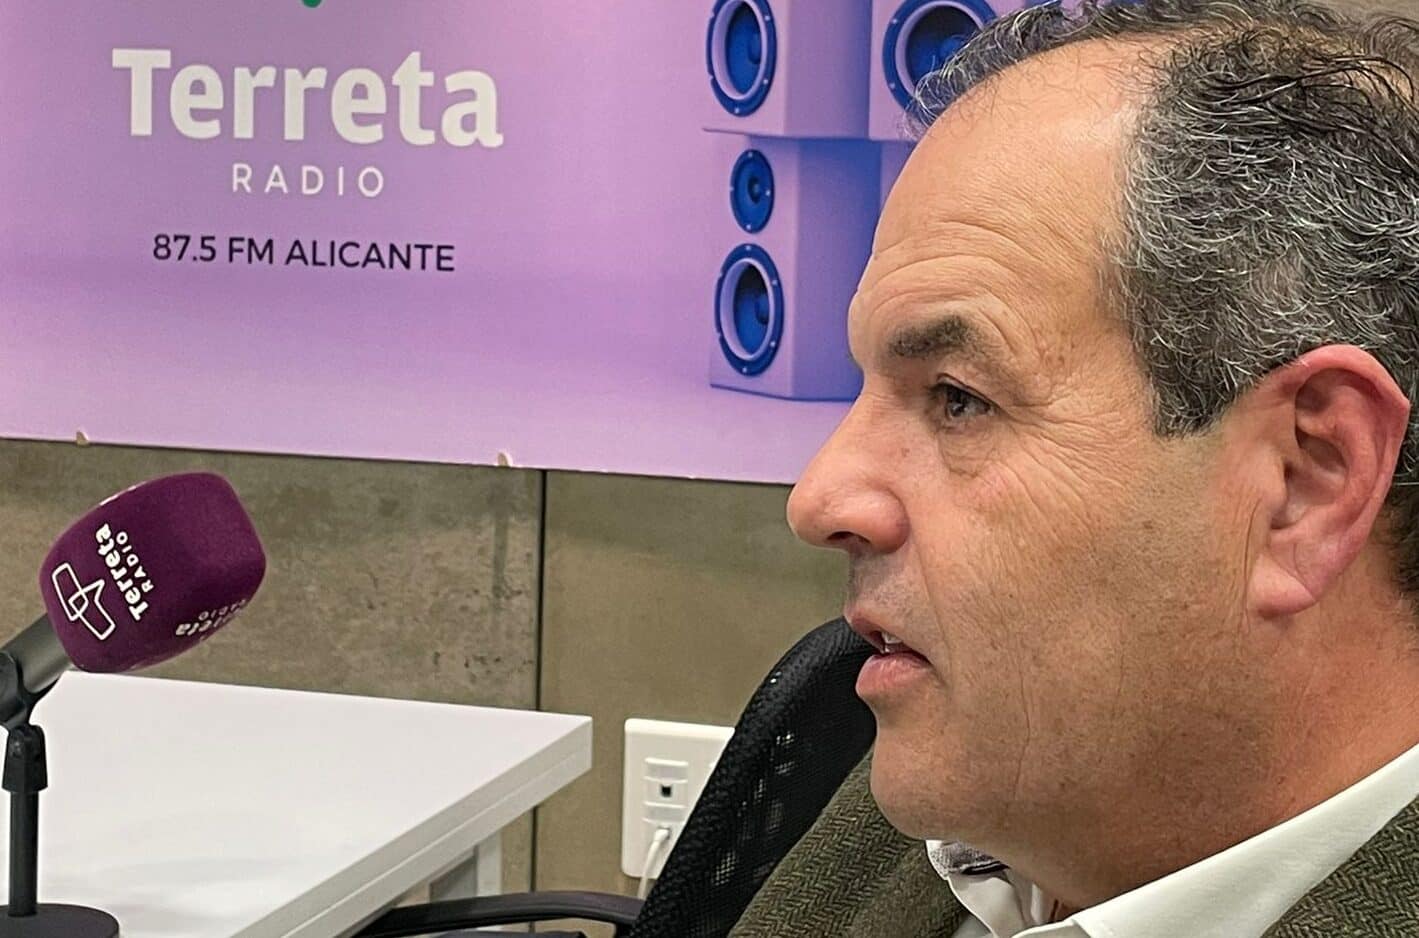 Carlos Baño (Presidente de la Cámara de Comercio de Alicante): “Es una vergüenza que se hable mal de un empresario”